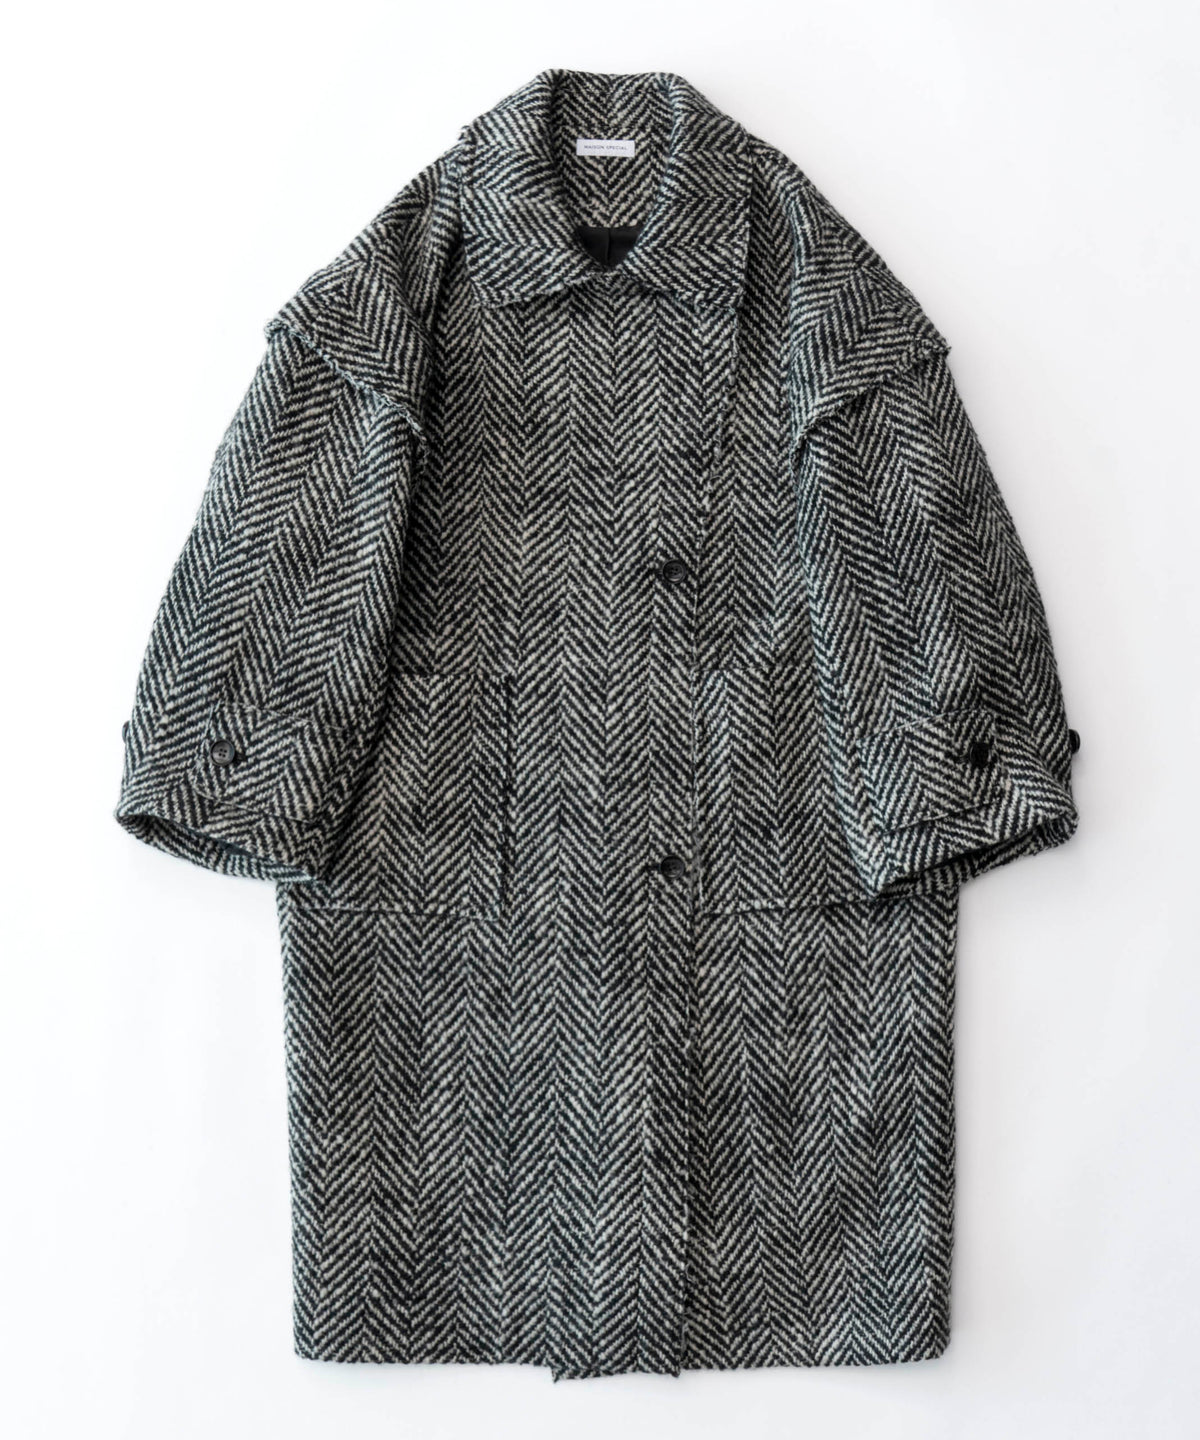 Cut-off Tweed Overcoat